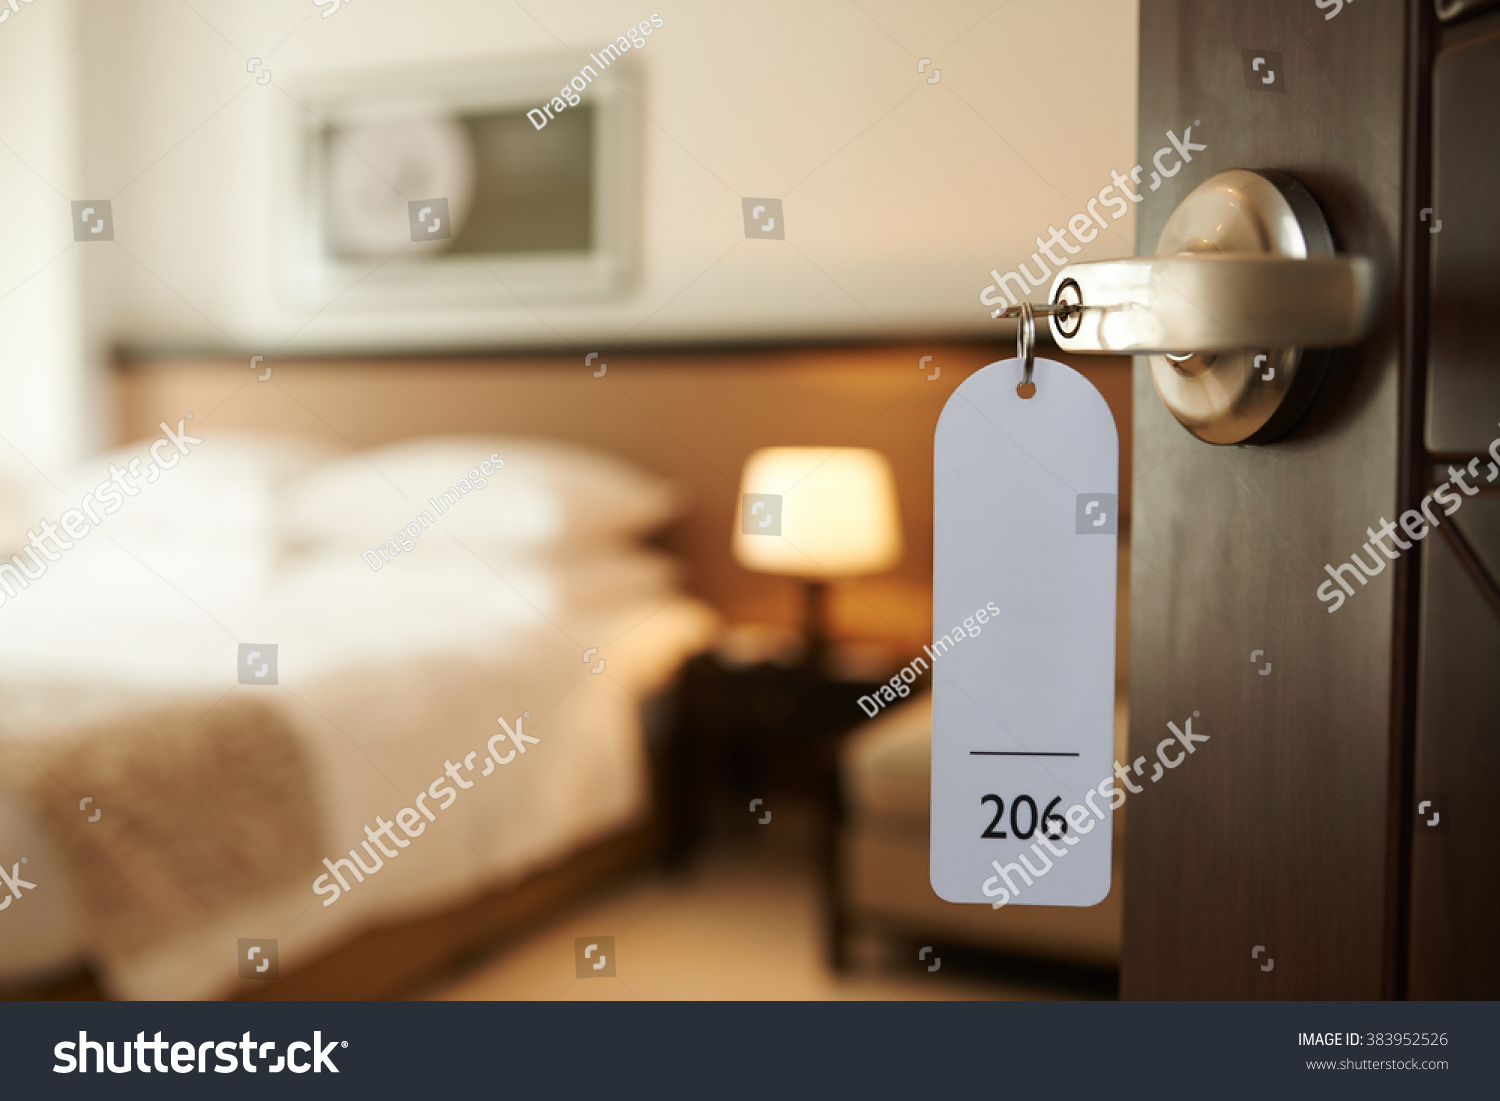 Opened door of hotel room with key in the lock #383952526